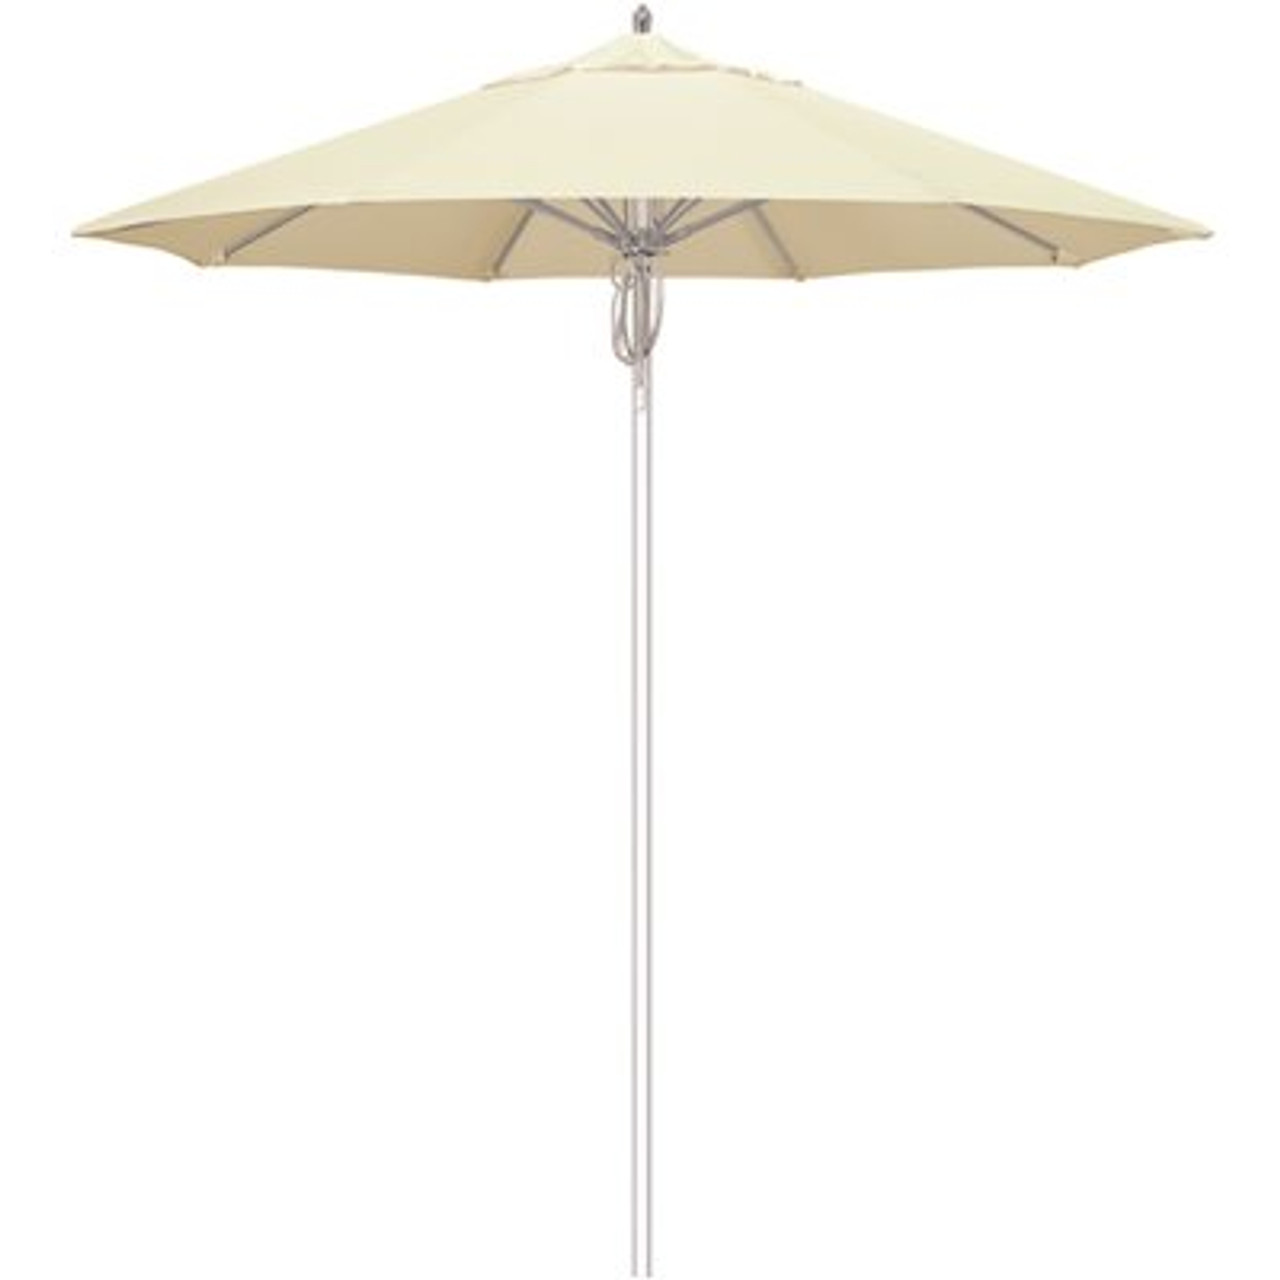 7.5 ft. Silver Aluminum Commercial Market Patio Umbrella Fiberglass Ribs and Pulley Lift in Canvas Sunbrella